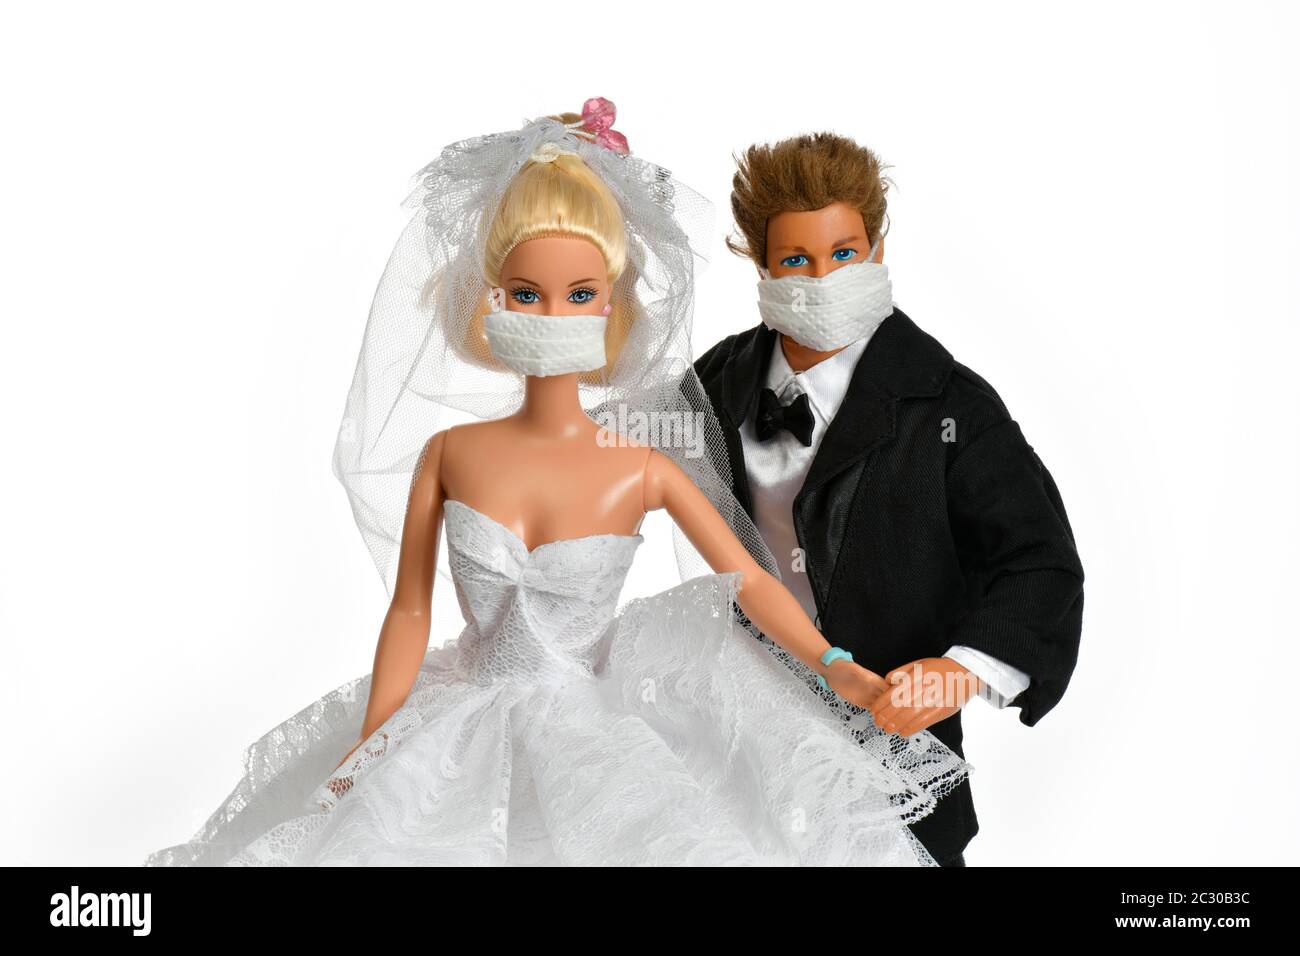 Imagen de símbolo, bodas canceladas, compañía de juguetes Mattel en crisis, Barbie y Ken con máscaras, Corona crisis, Alemania Foto de stock